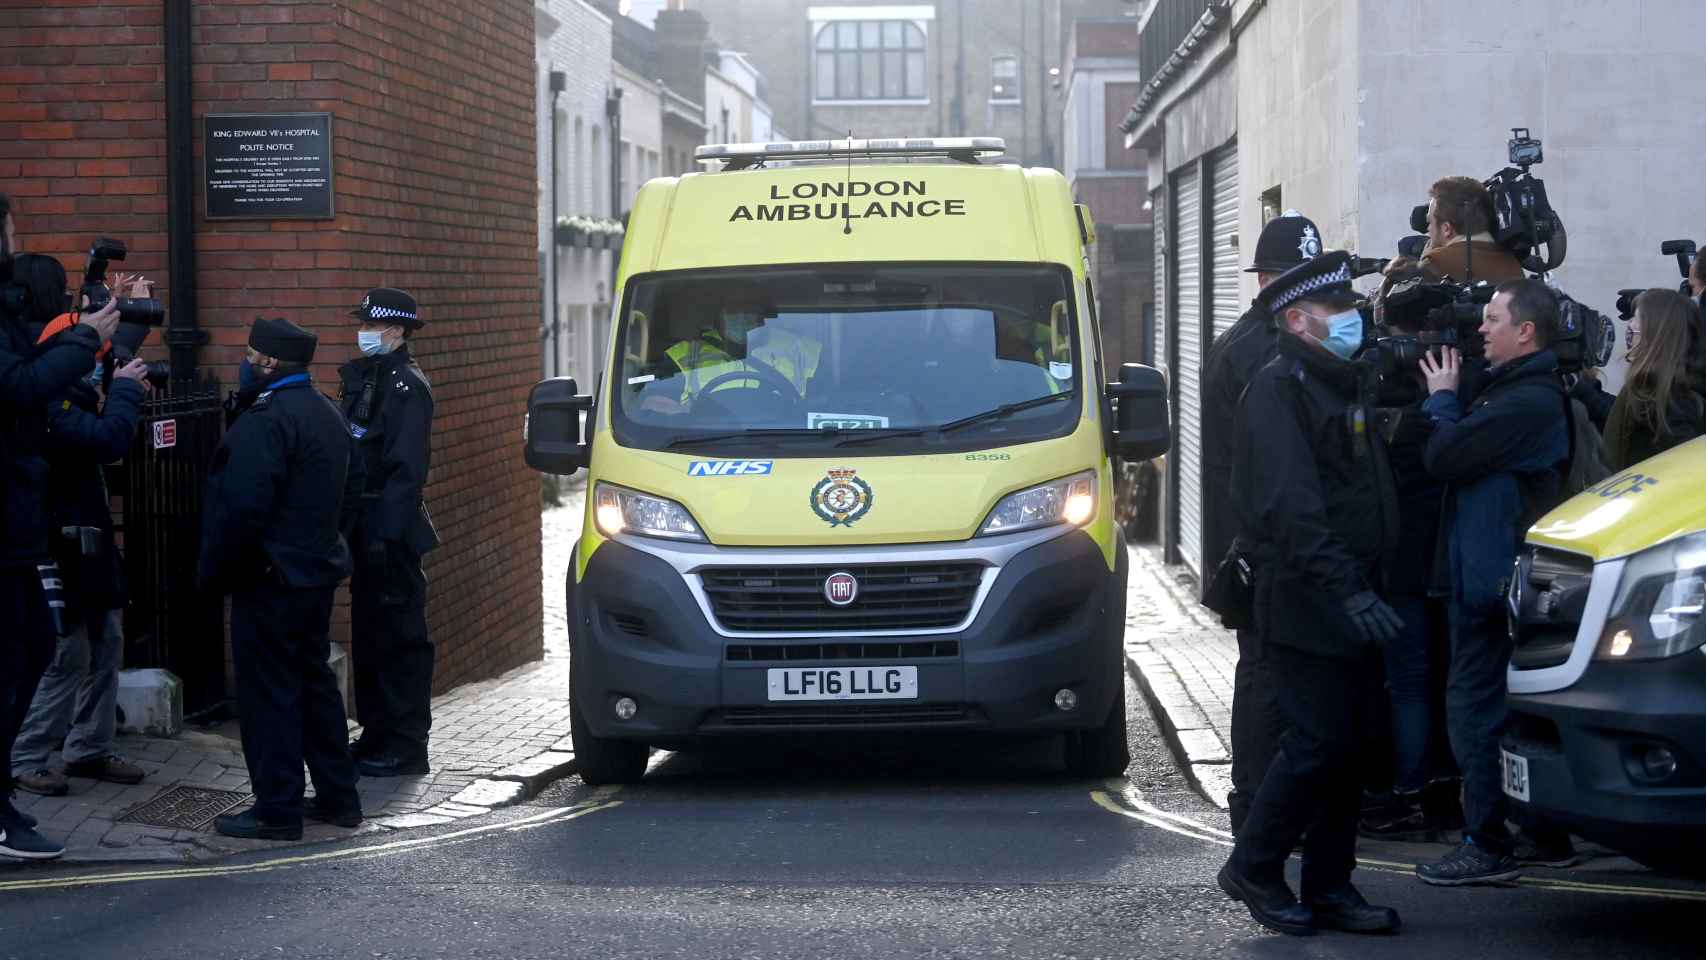 Imagen de la ambulancia que trasladó a mitad de semana a Felipe de Edimburgo para ser intervenido del corazón.